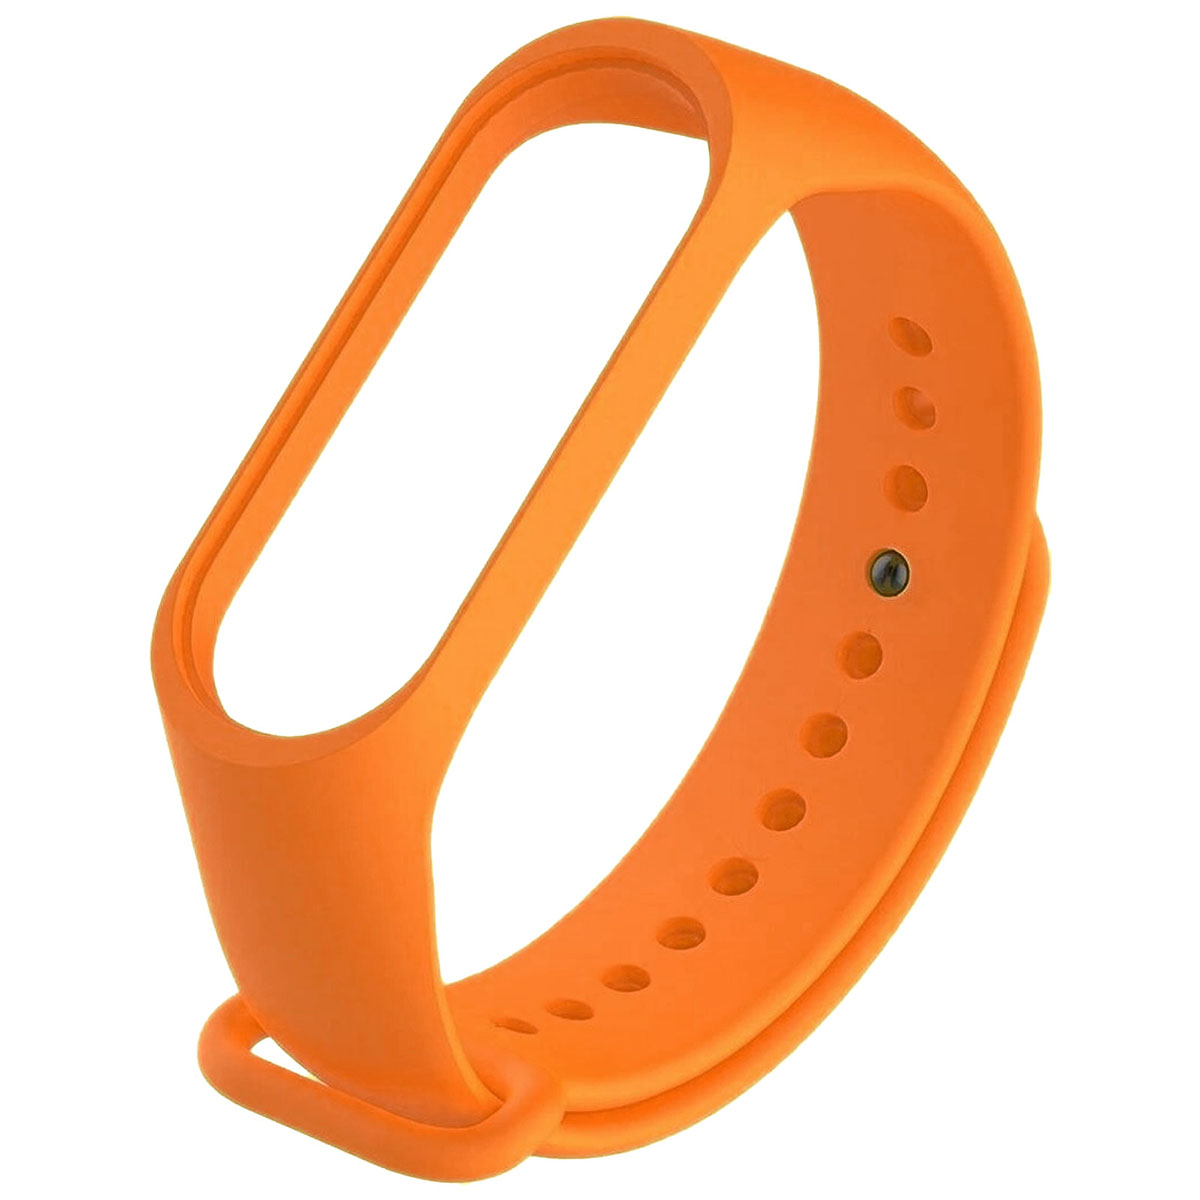 Сменный ремешок для фитнес браслета, смарт часов XIAOMI Mi Band 5, цвет оранжевый.